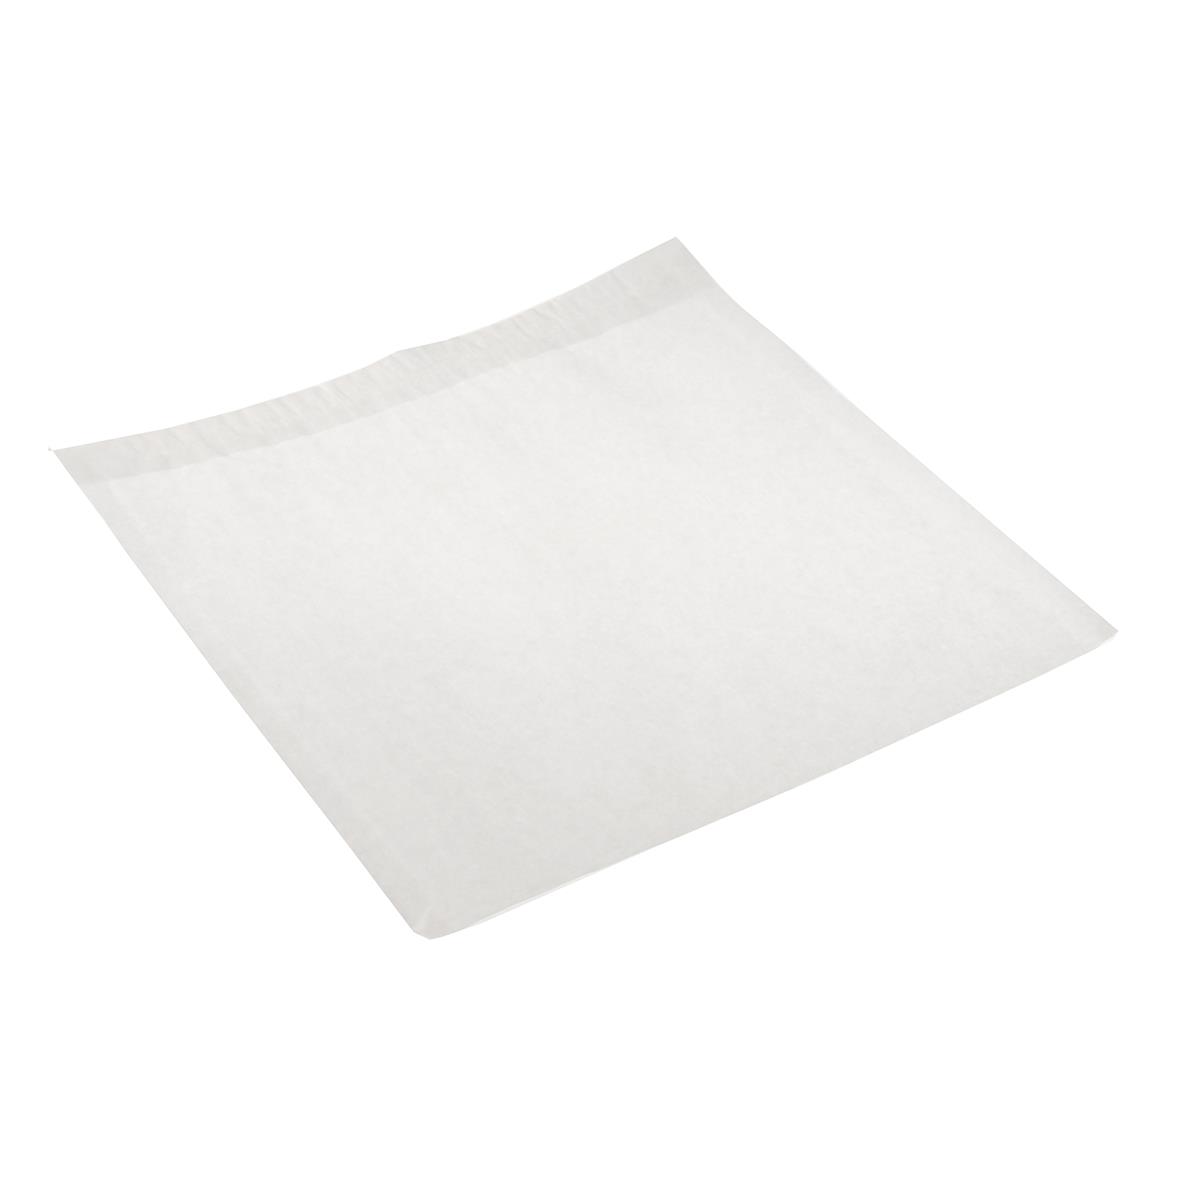 Papperspåse Smörgåspåse vit 250x250 mm